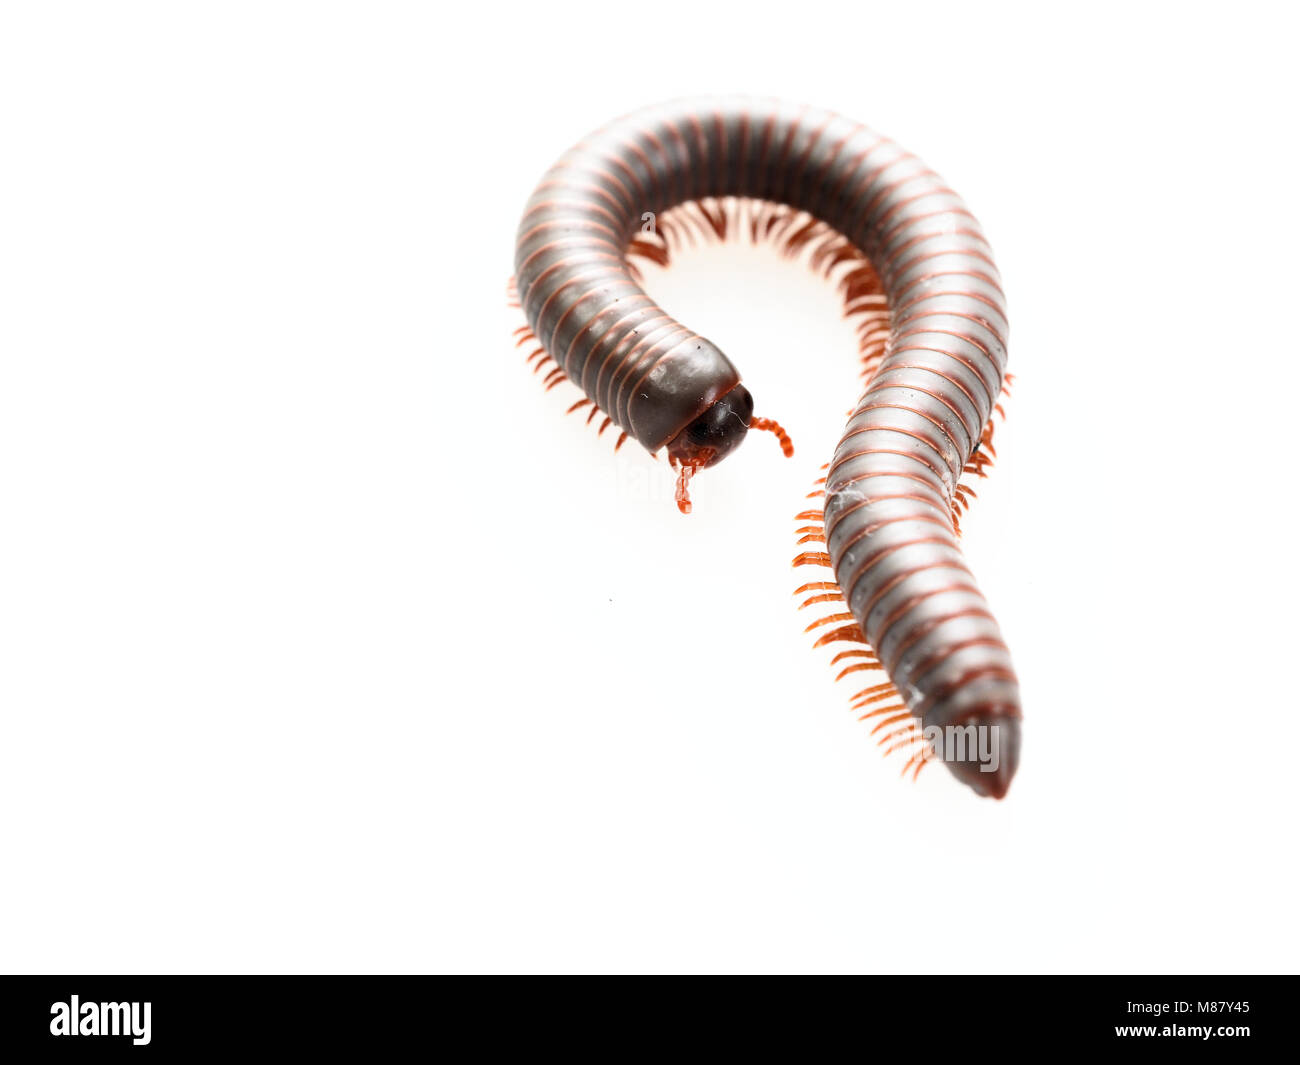 Tausendfüßer, Insekt mit langen Körper und viele Beine sehen aus wie Tausendfüßler, Wurm, oder mit dem Zug, die sehr langsam bewegen und die Spule in Spiralform auf weißem Hintergrund Stockfoto